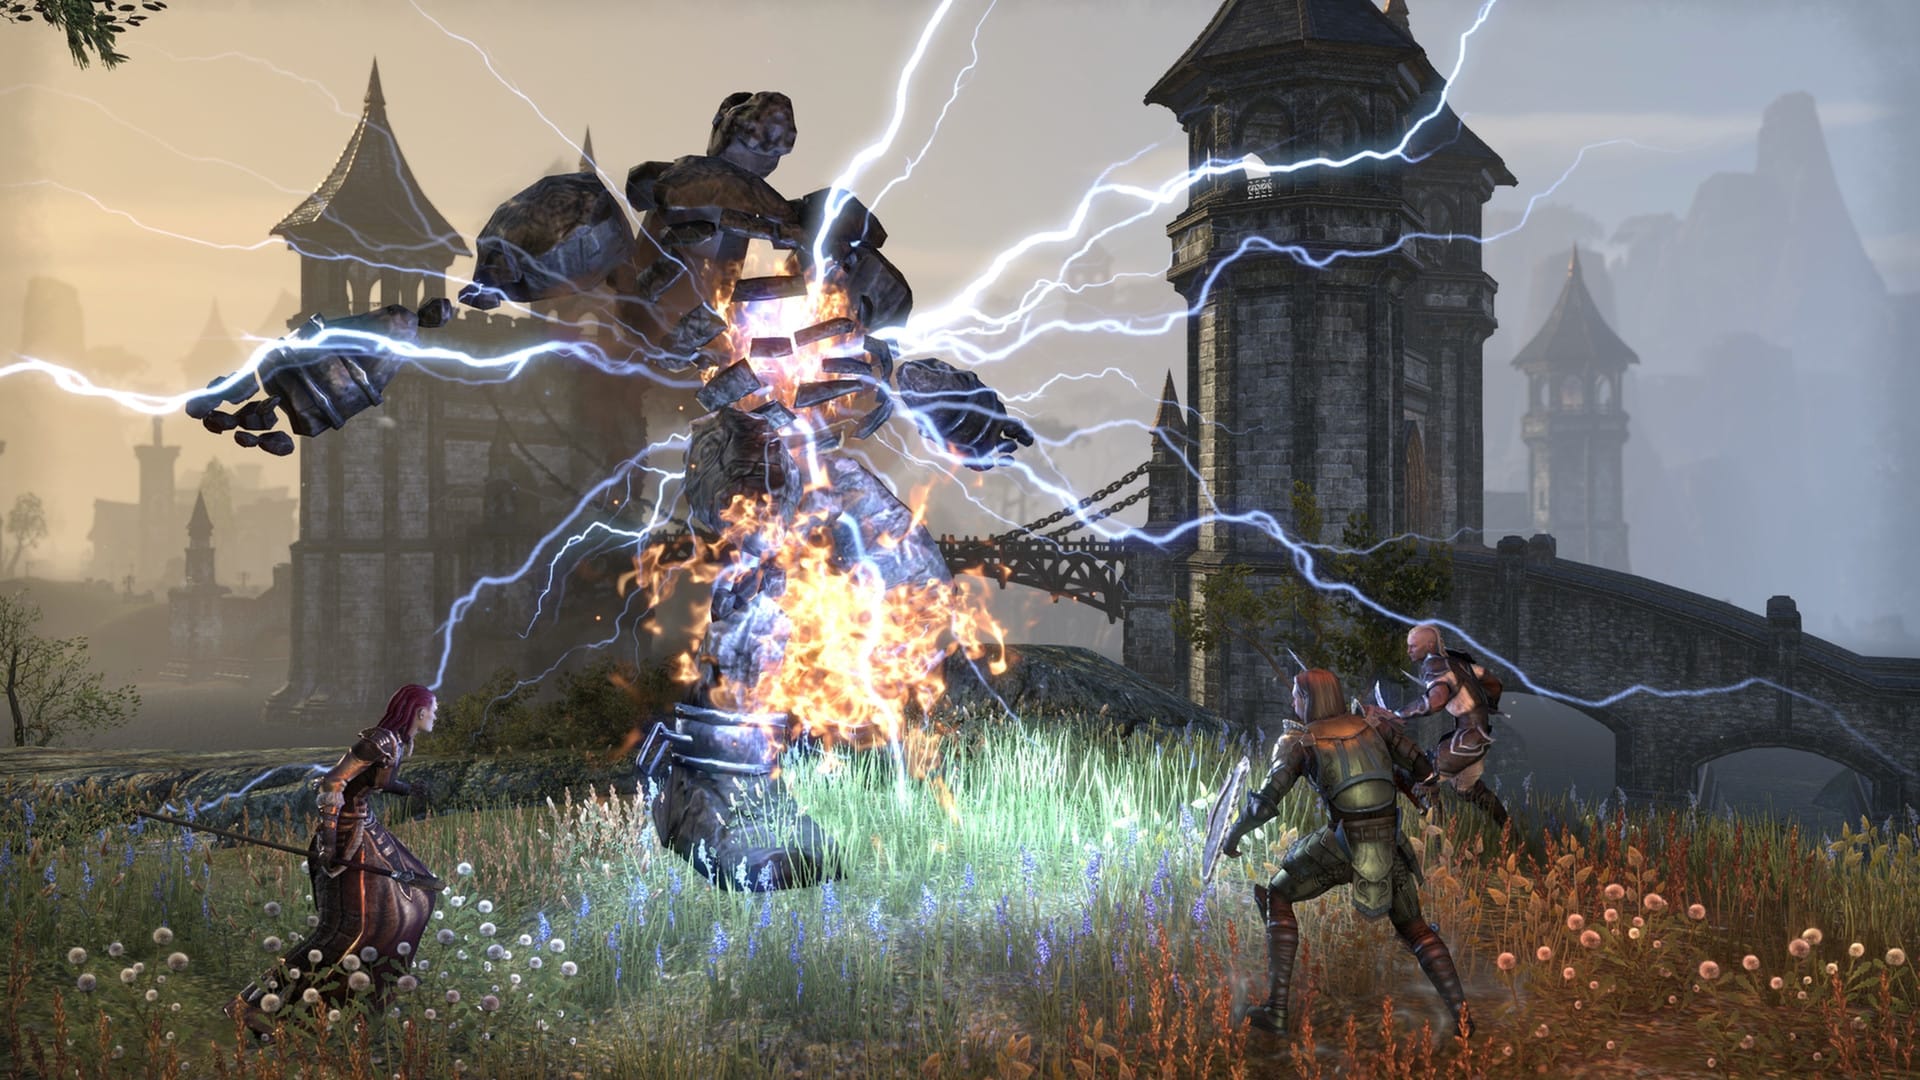 Καλύτερα παιχνίδια MMORPG: Οι Elder Scrolls online. Η εικόνα δείχνει ένα πάρτι τριών χαρακτήρων που έρχονται σε ένα μεγάλο πέτρινο πλάσμα με ηλεκτρικό ρεύμα που βγαίνει από αυτό